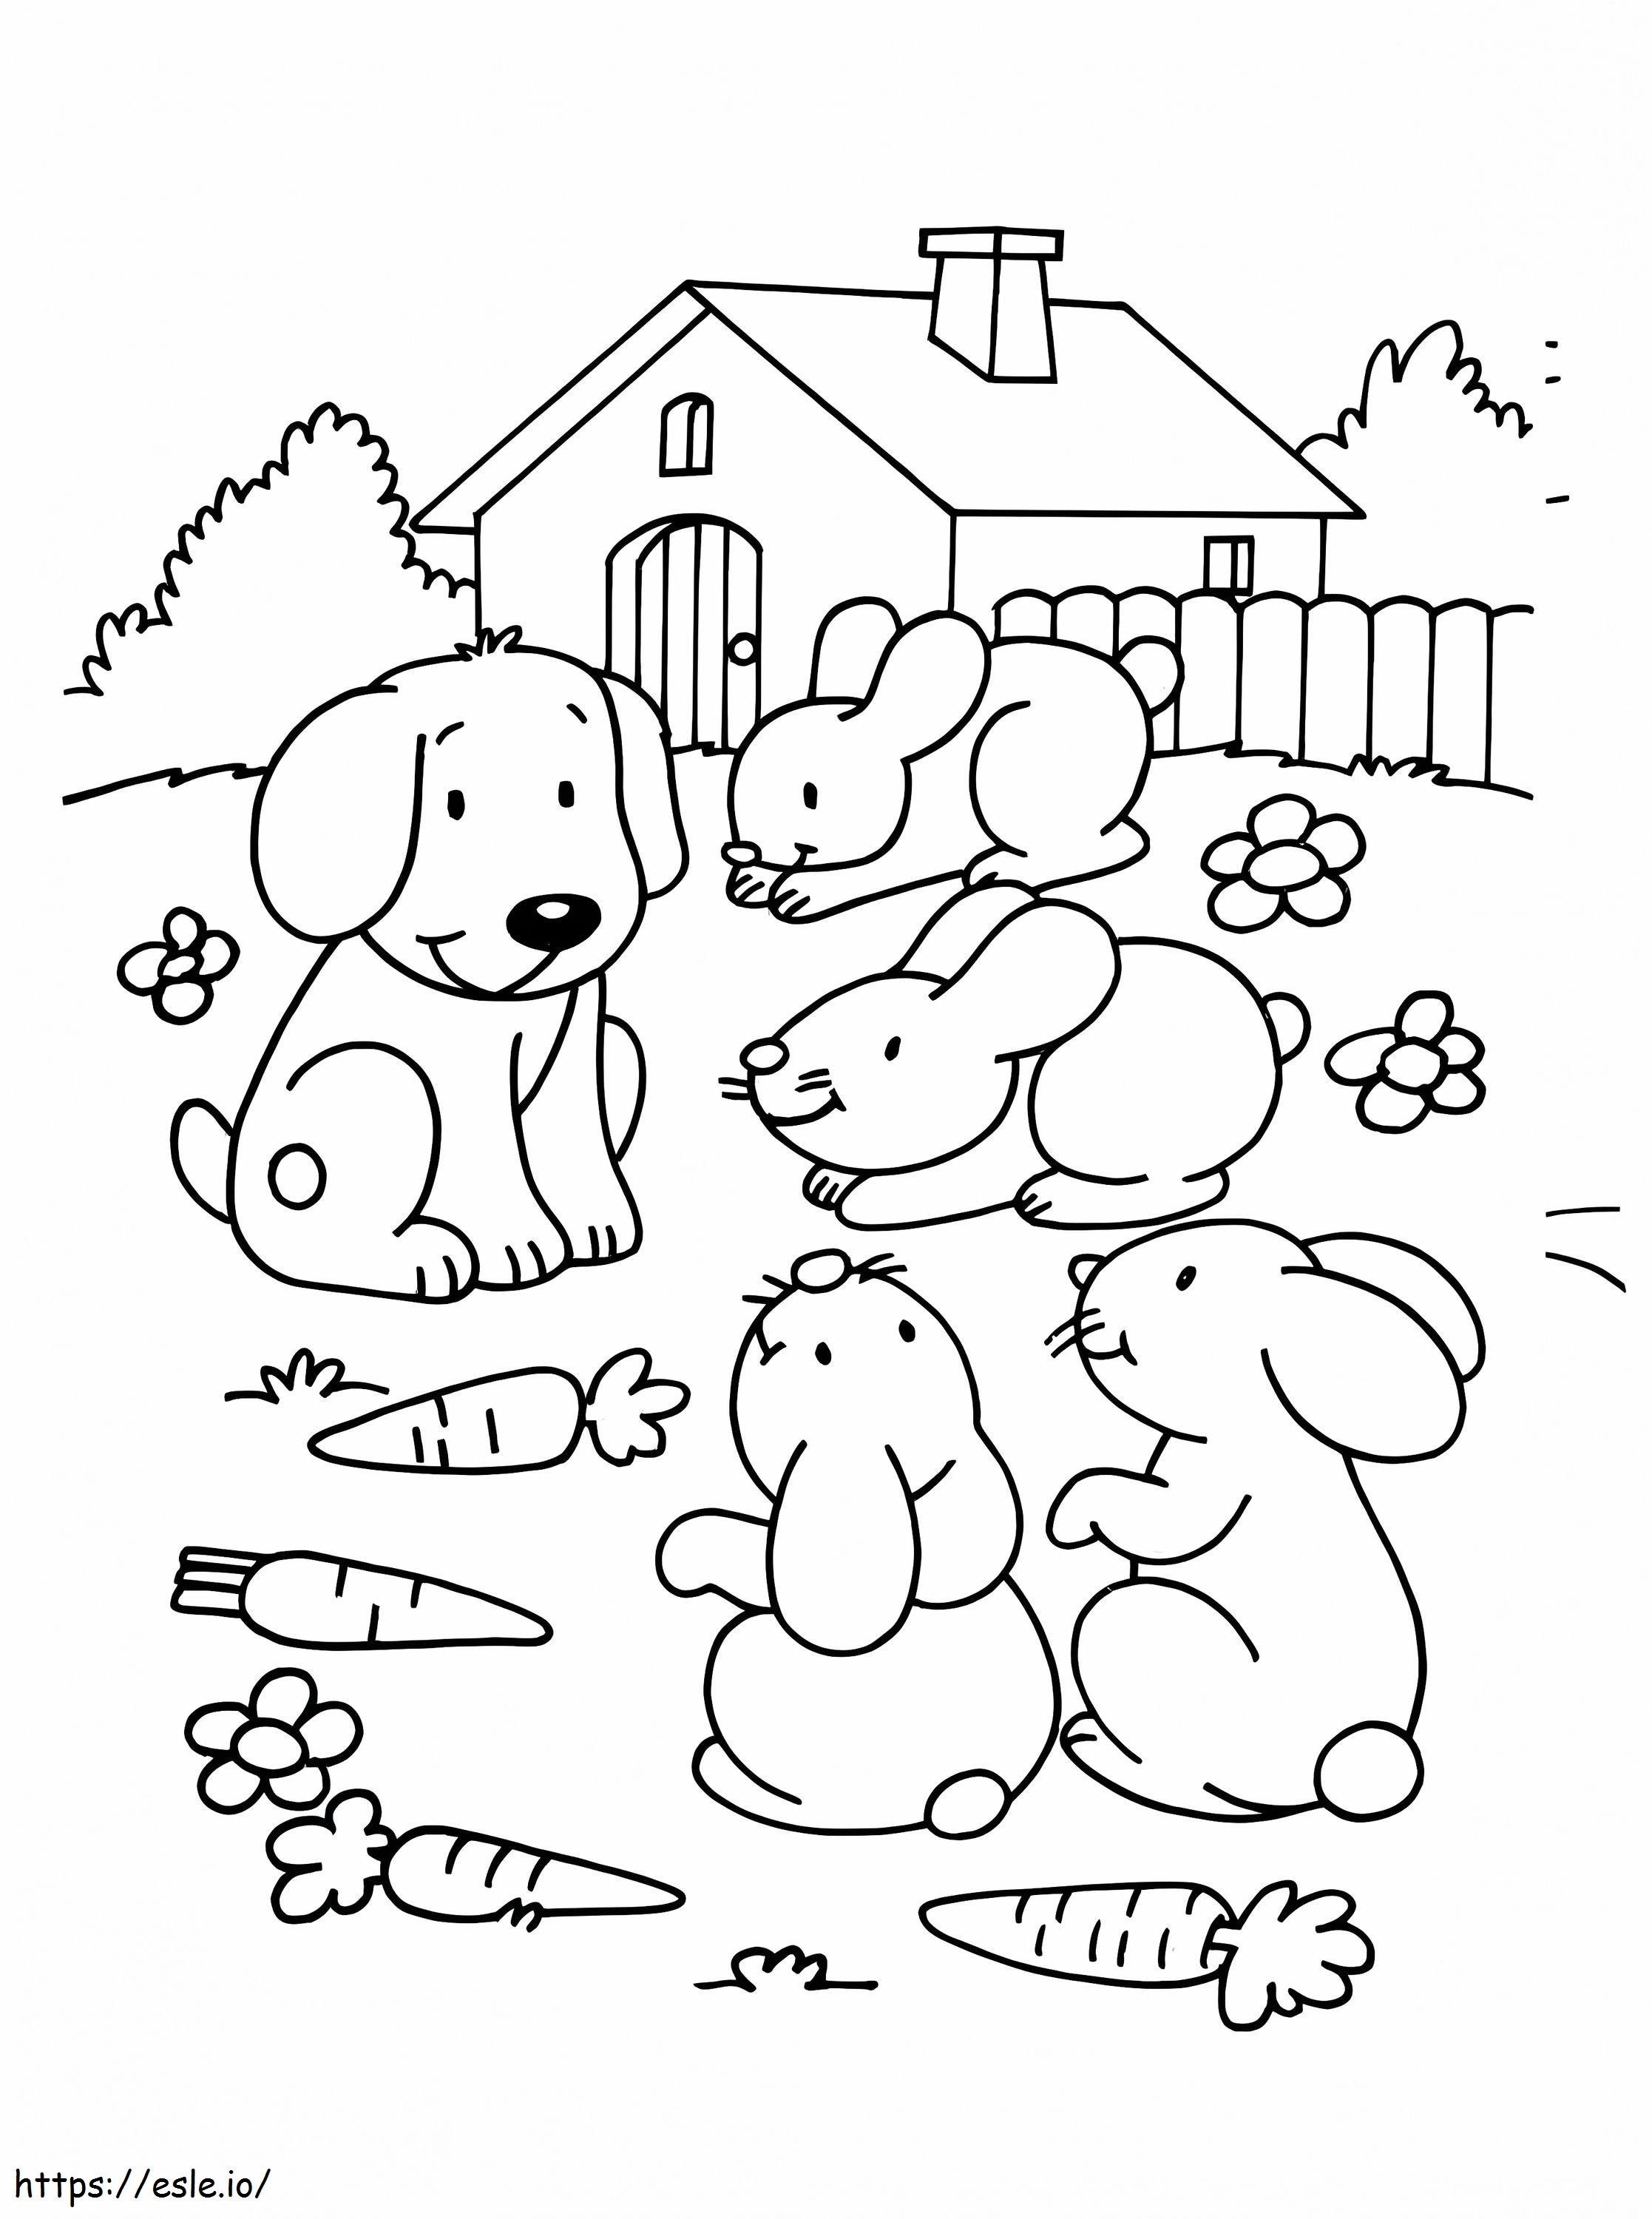 Evcil Hayvanlar Köpekler Ve Tavşanlar Renklendirilecek boyama